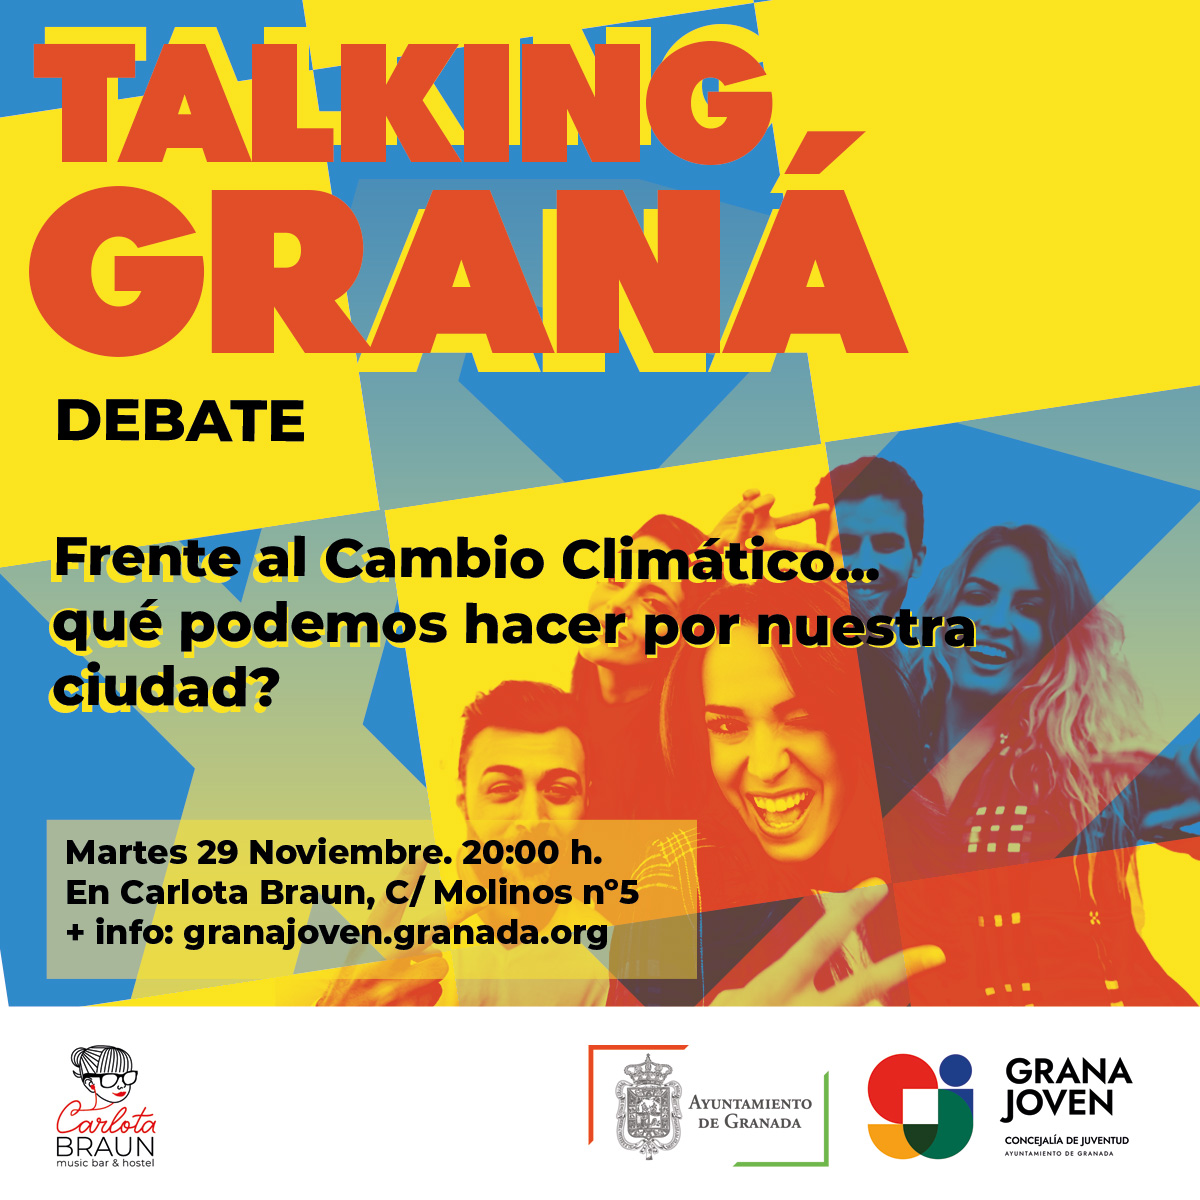 TALKING GRANÁ. Debate sobre el Cambio Climático